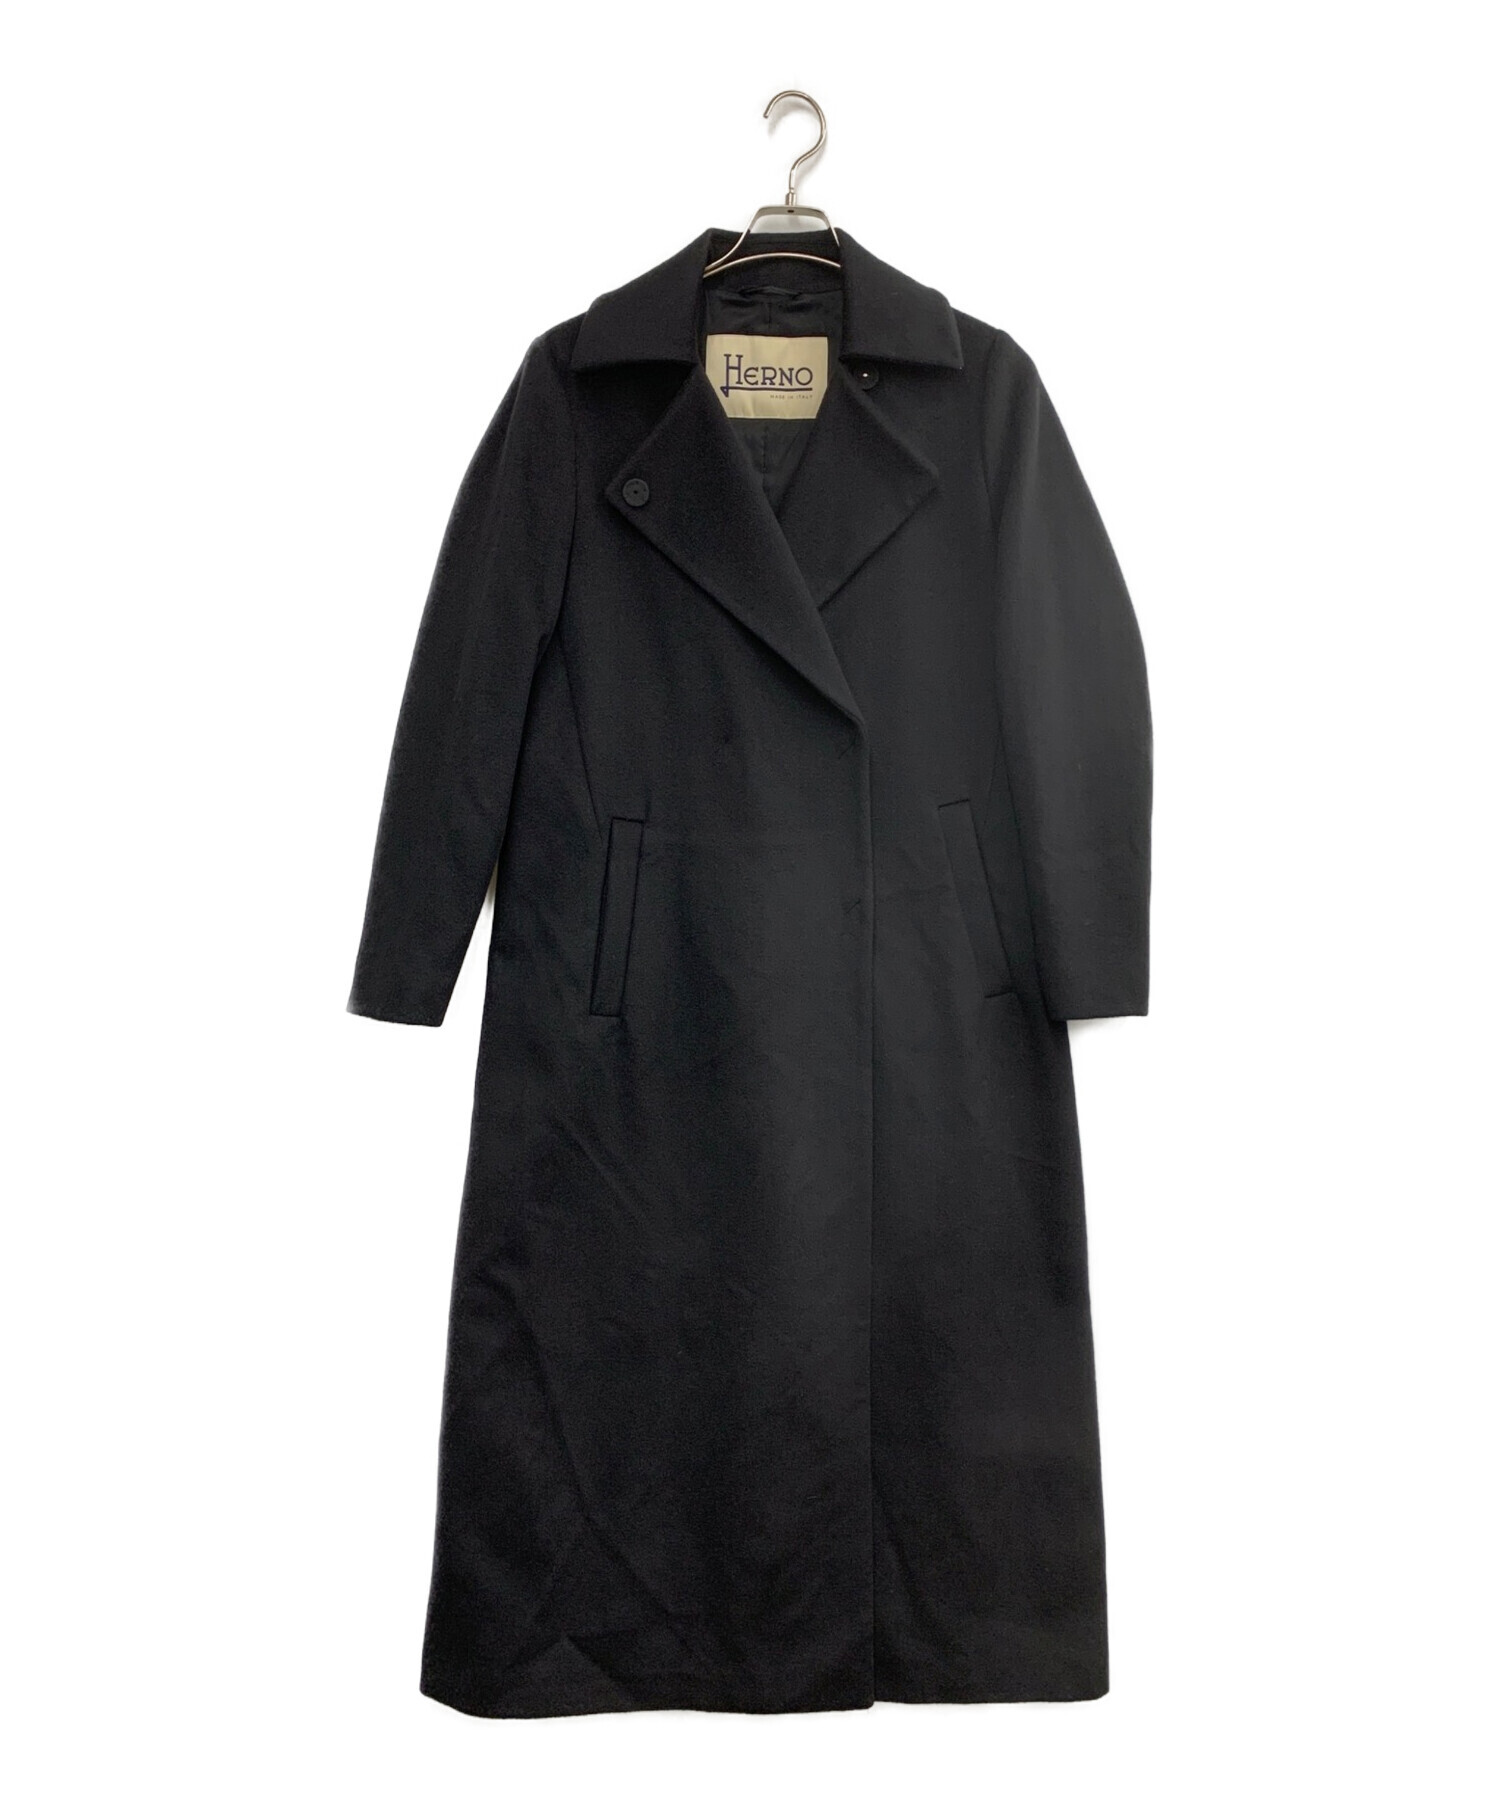 HERNO (ヘルノ) ロングコート ブラック サイズ:42